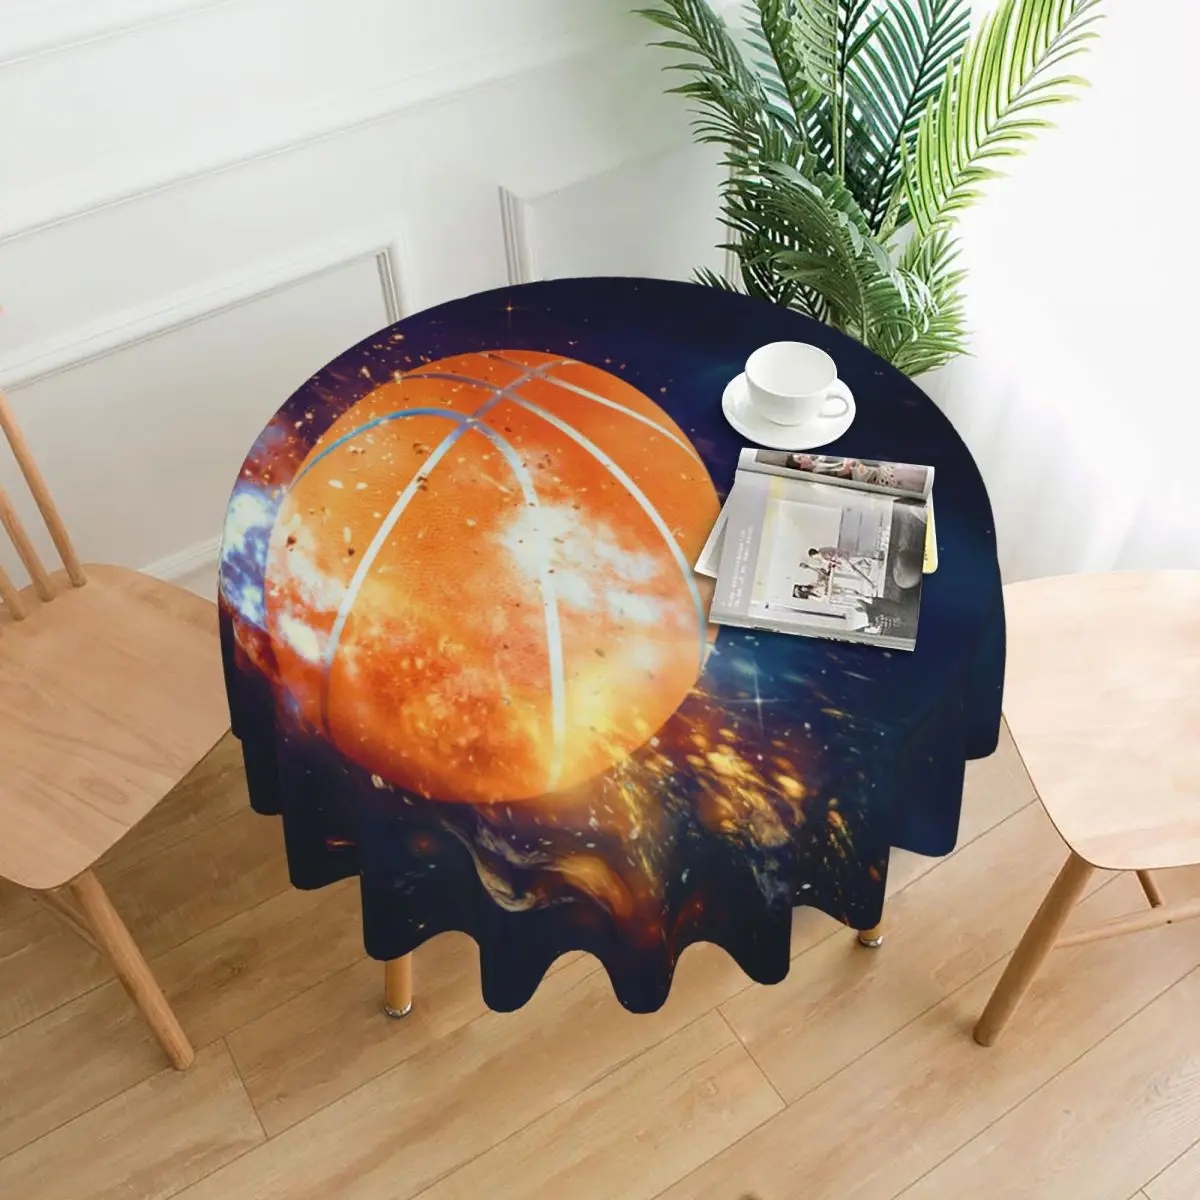 

Декоративная скатерть в виде баскетбольного мяча, мушек, плотная круглая скатерть для обеденного стола, скатерть для чайного стола